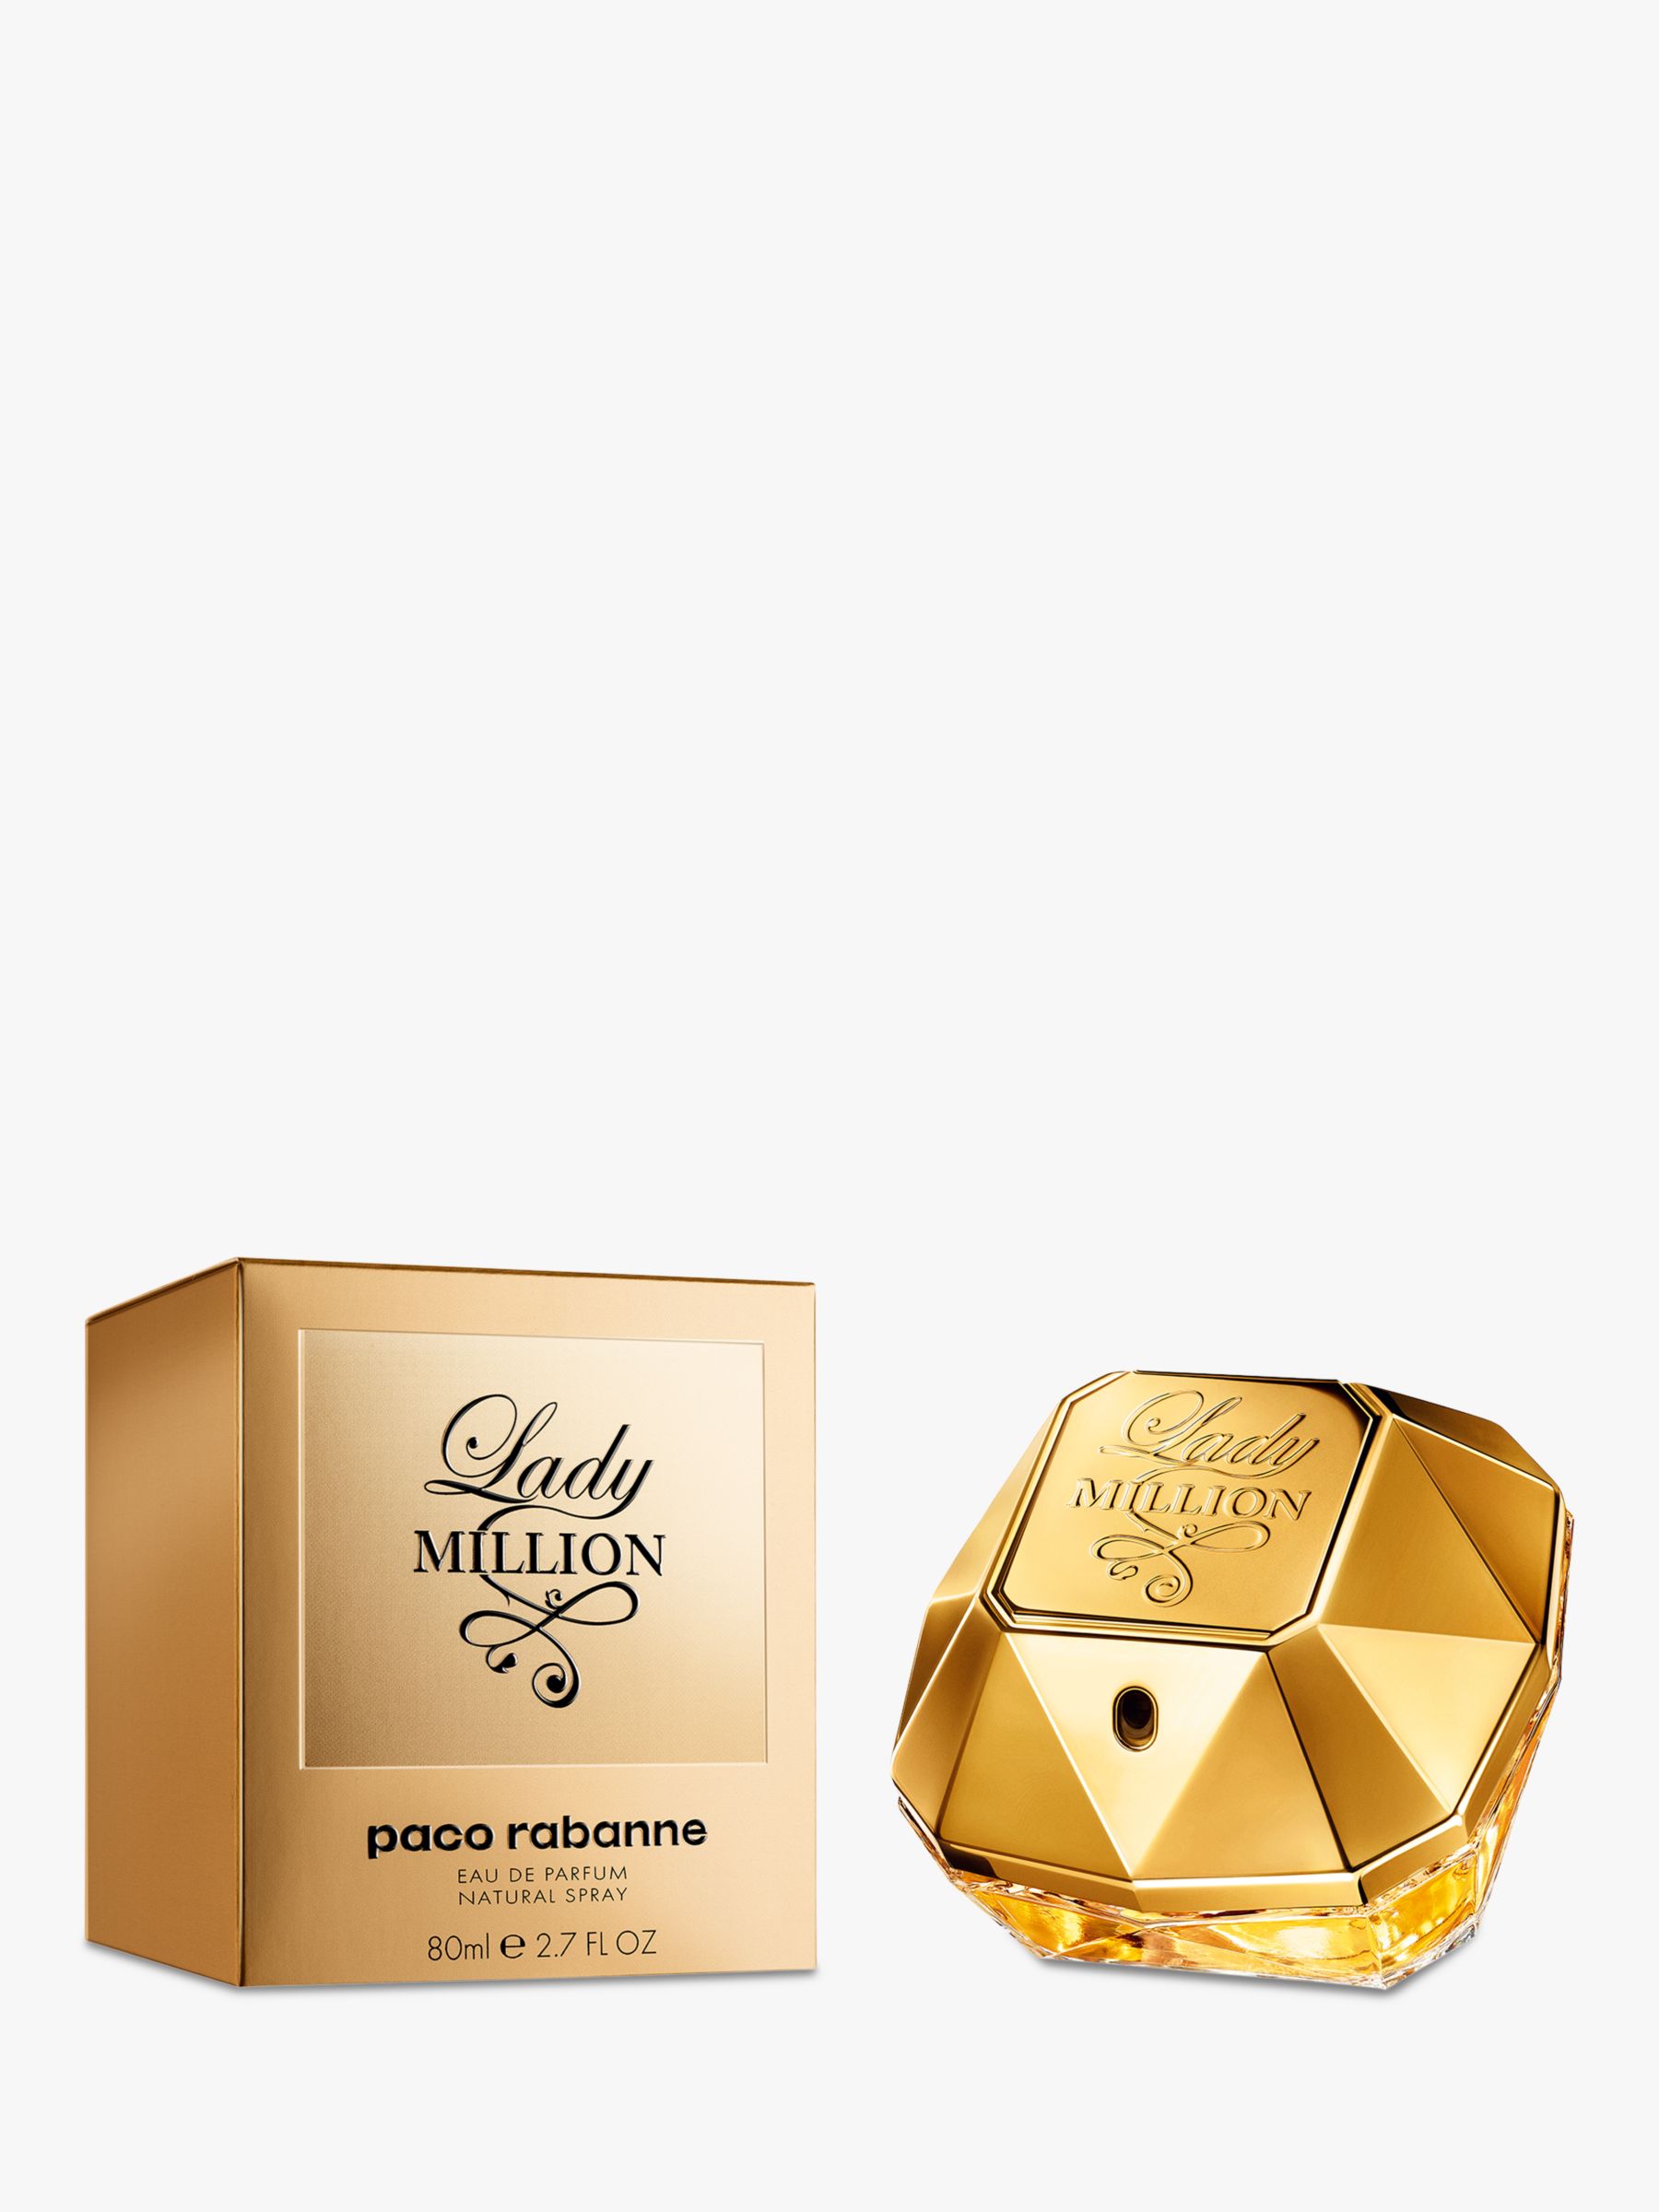 Rabanne Lady Million Eau de Parfum, 80ml at John Lewis & Partners